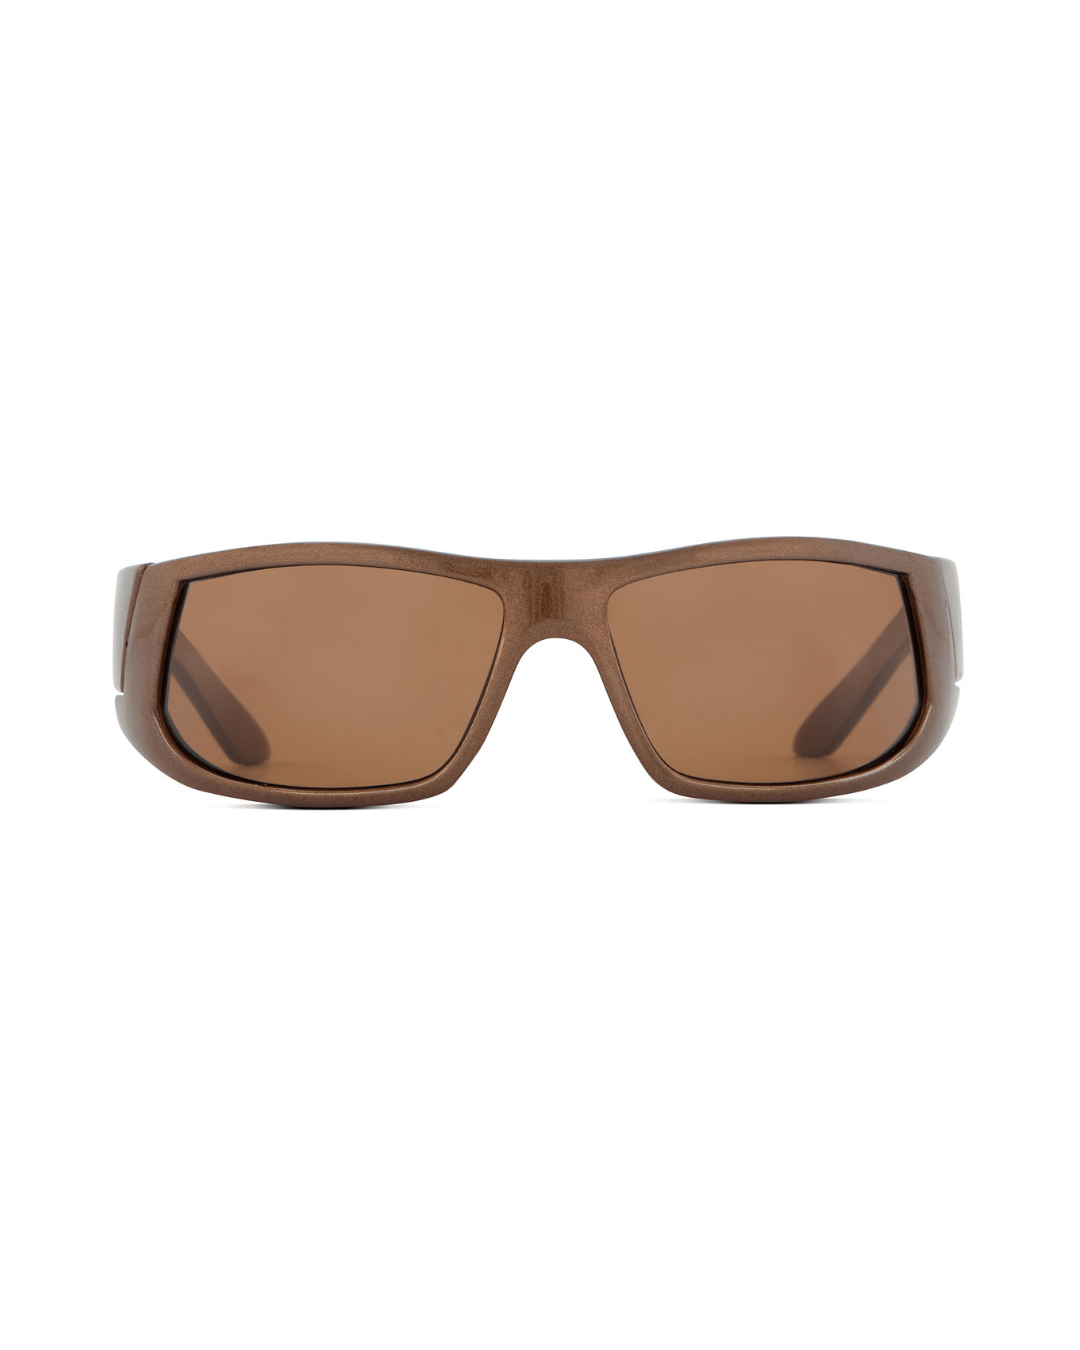 Copper Sport Shield Sunglasses - American Deadstock